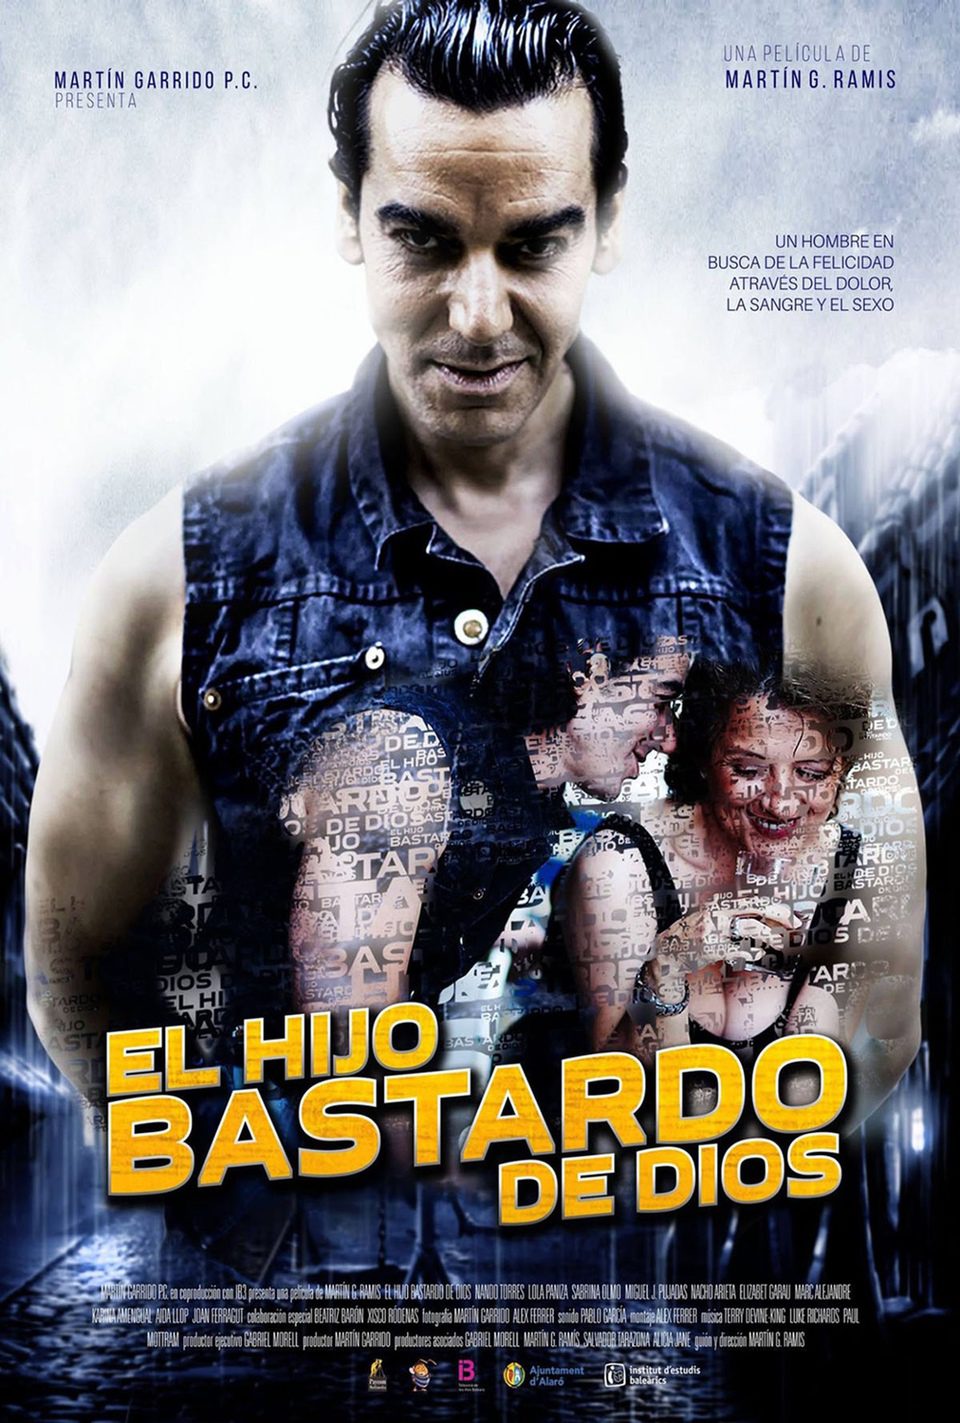 Poster of God's Bastard Son - España